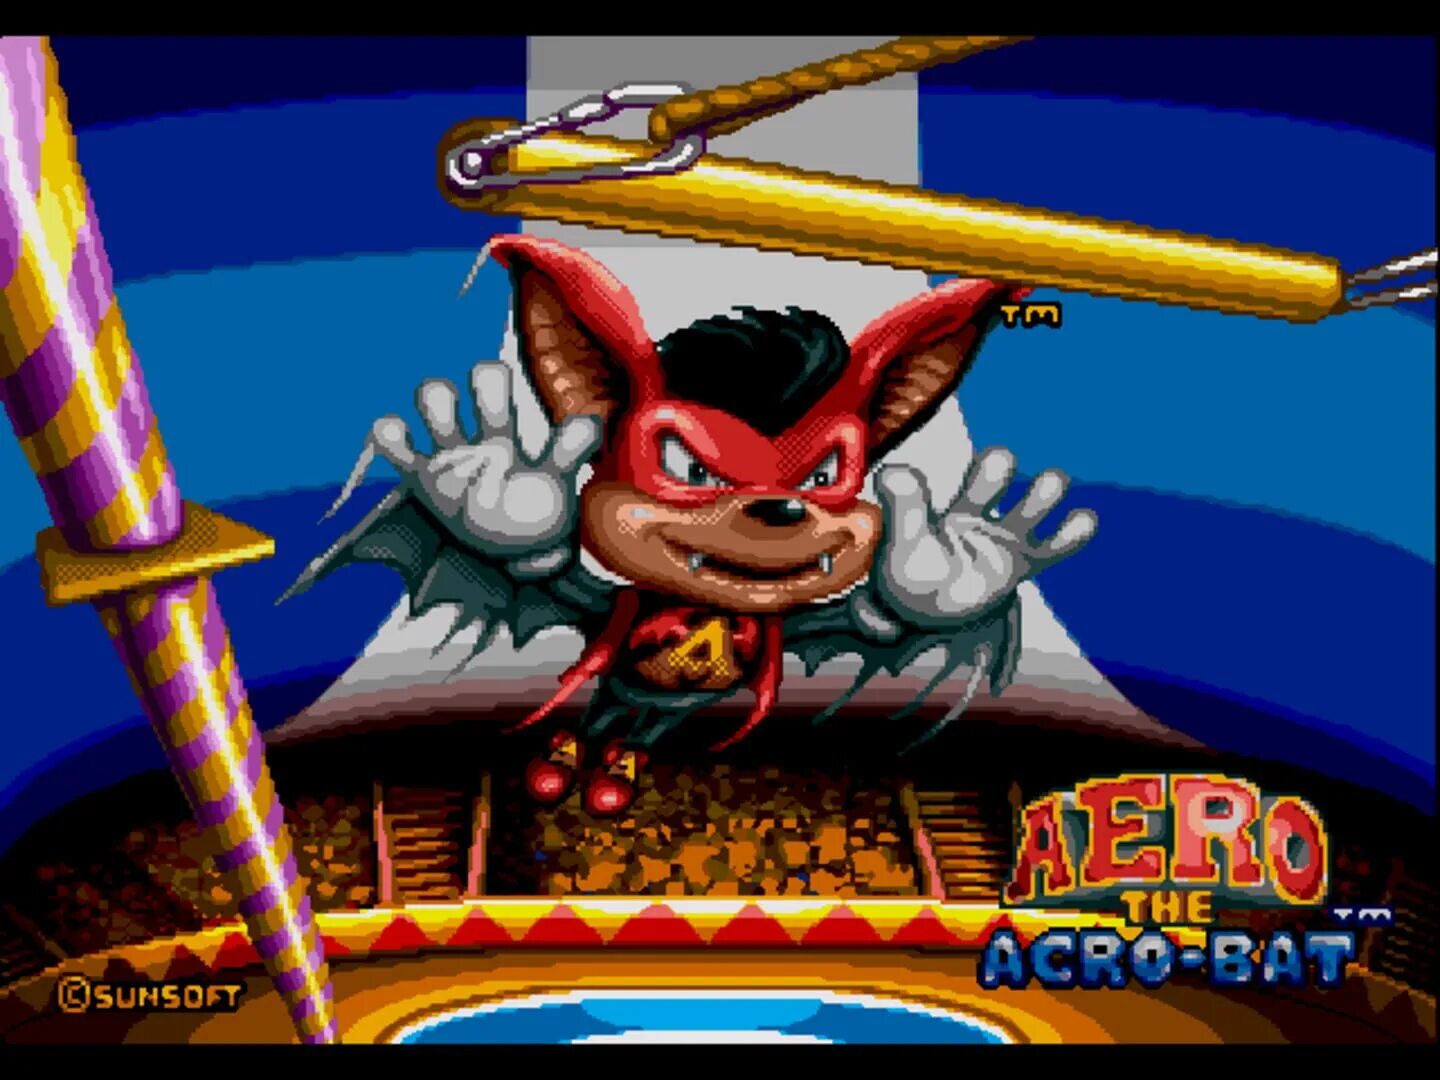 Run game bat. Aero the Acro-bat 2 Sega. Игра про летучую мышь на сега. Игра Aero the Acro-bat. Aero the Acro-bat Sega.